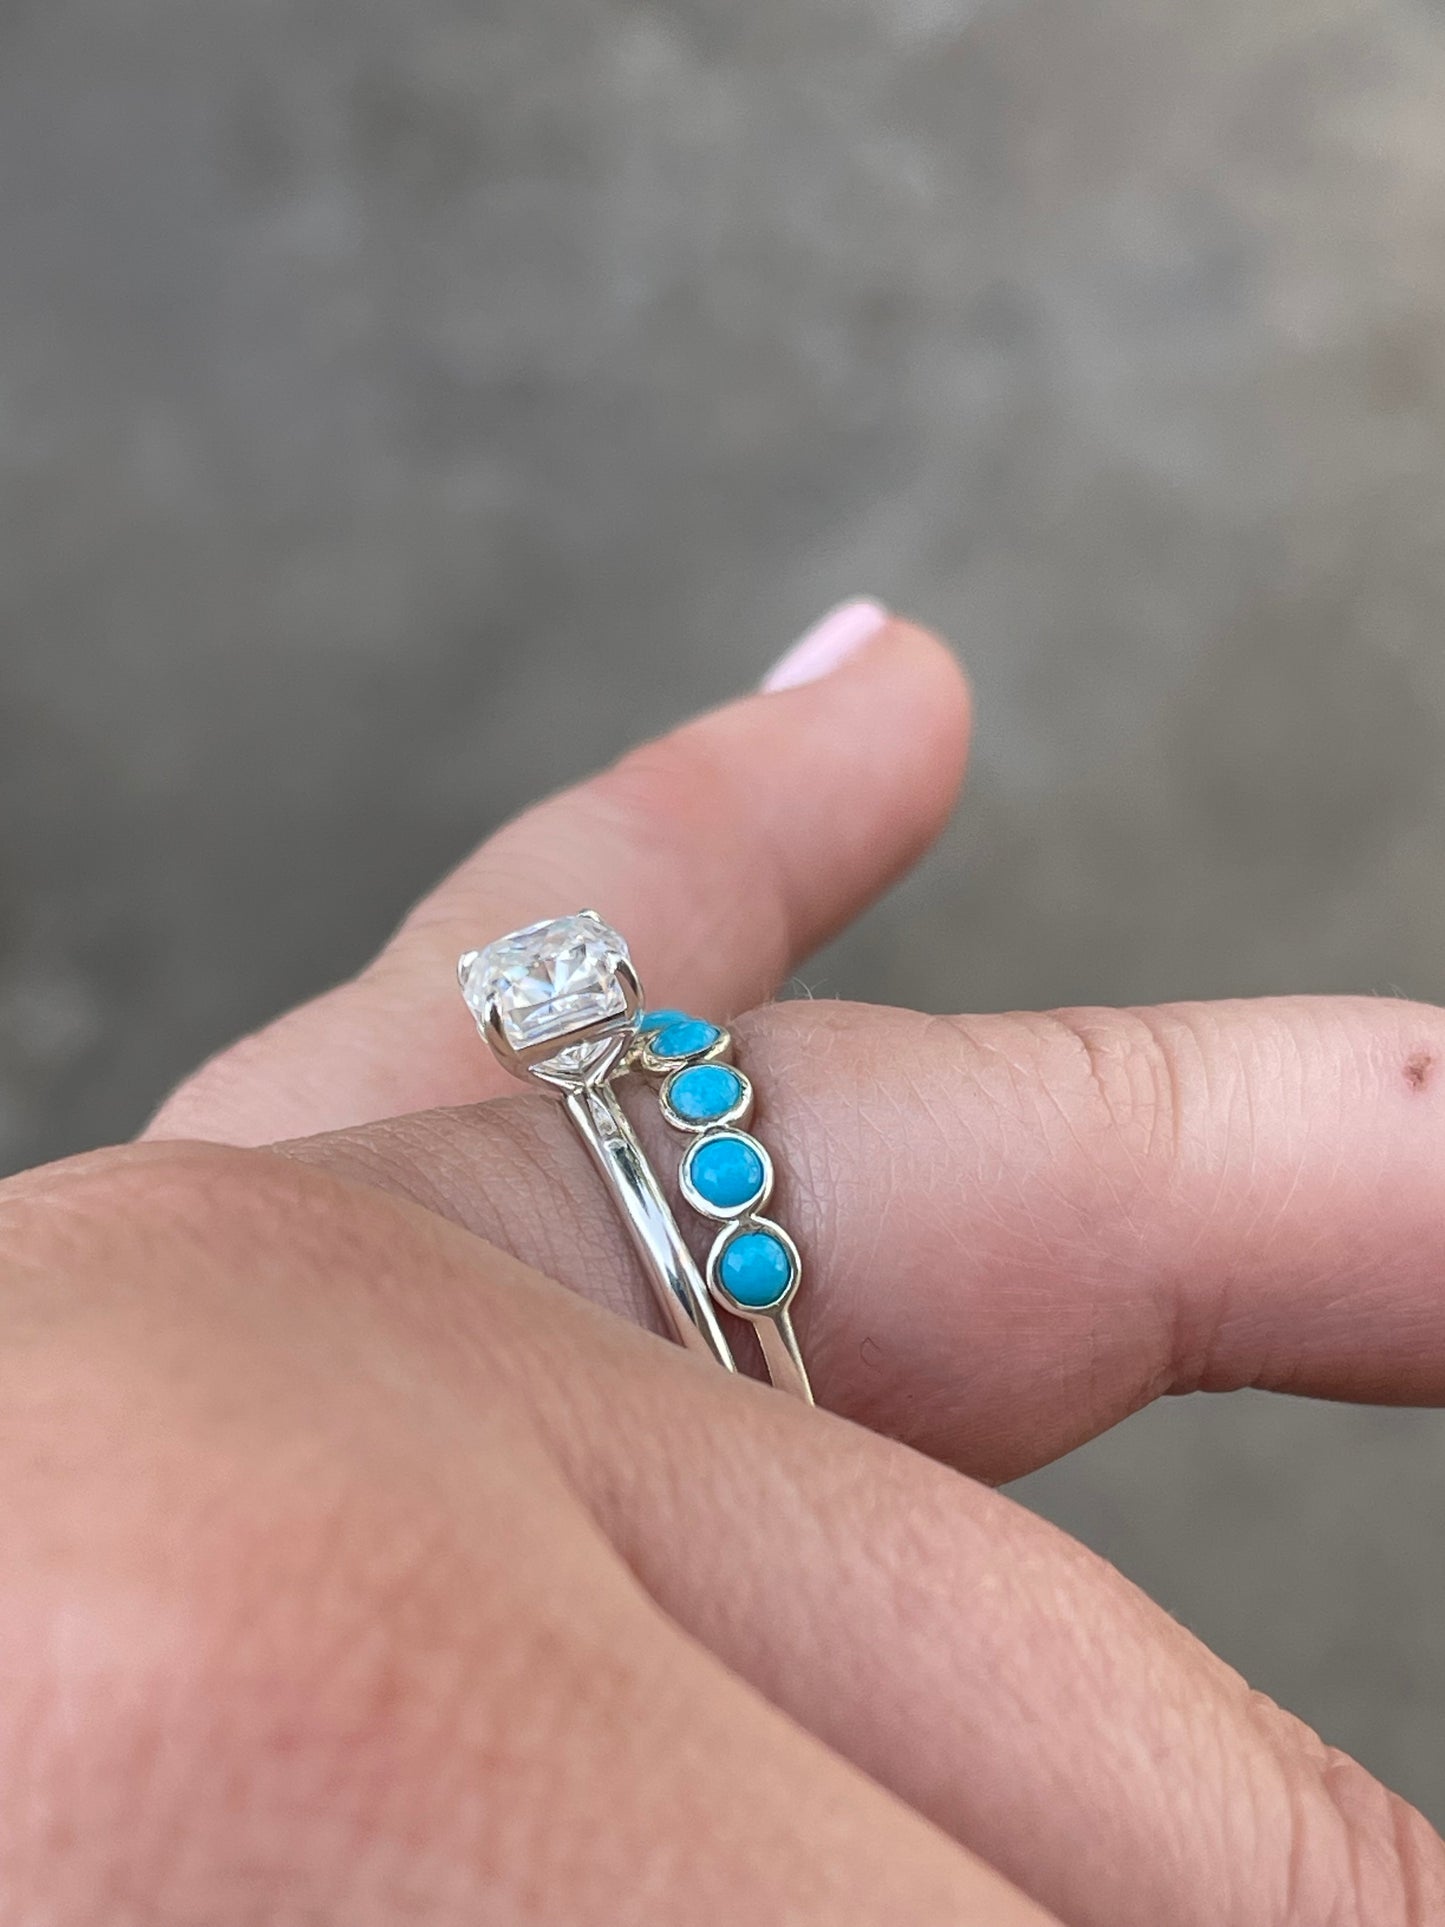 Emmett Sterling Silver Engagement Ring